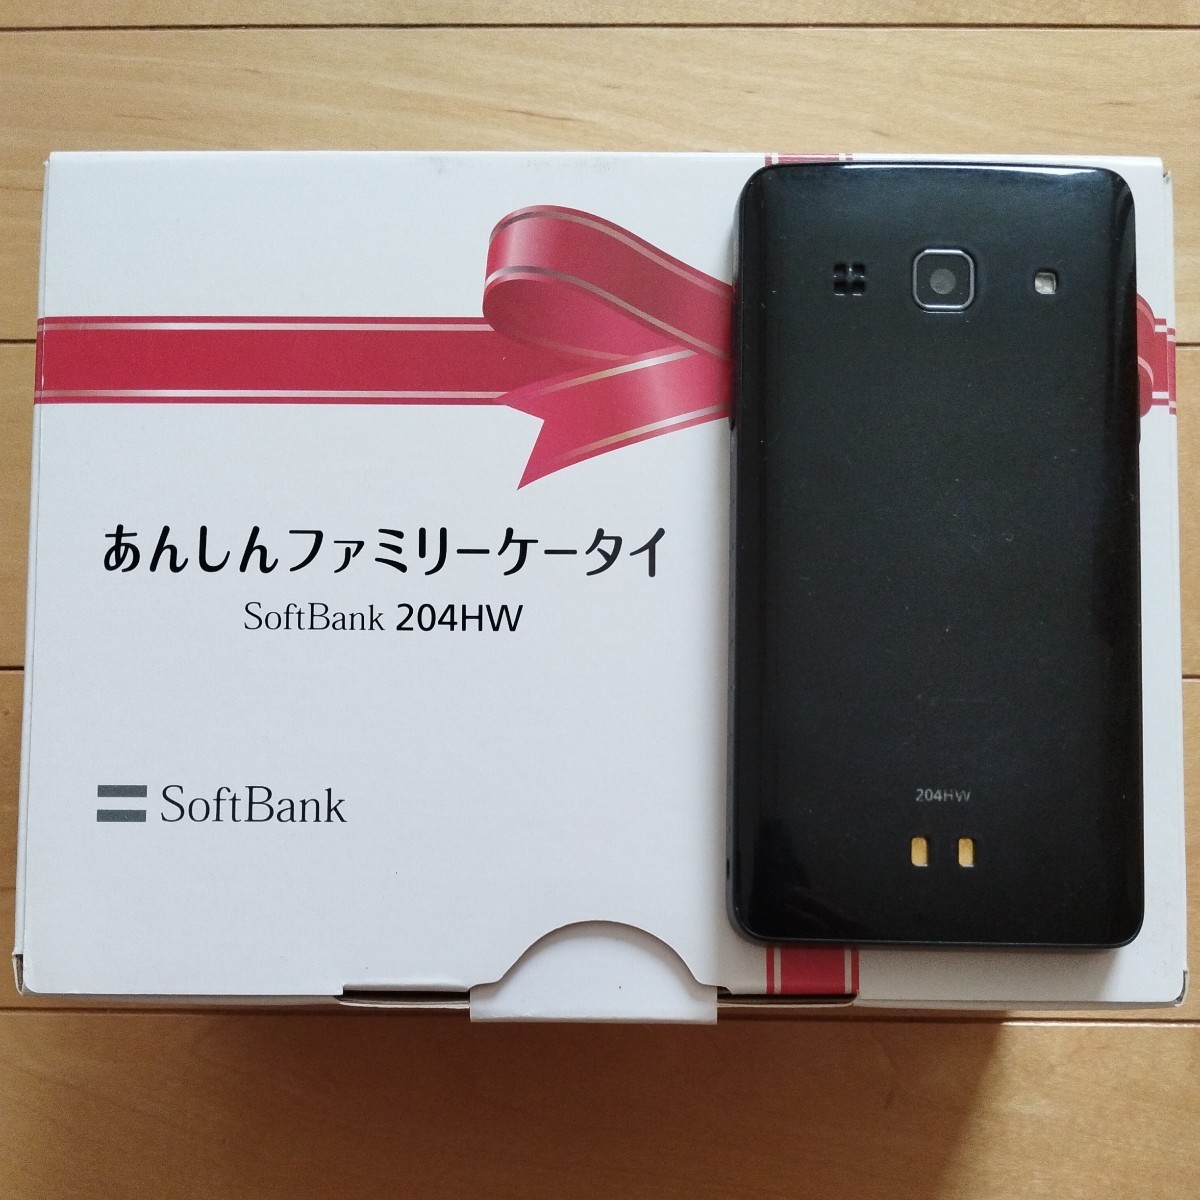 [ бесплатная доставка ] SoftBank .... Family мобильный телефон SoftBank 204HW BK чёрный б/у товар коробка есть первый период . завершено 